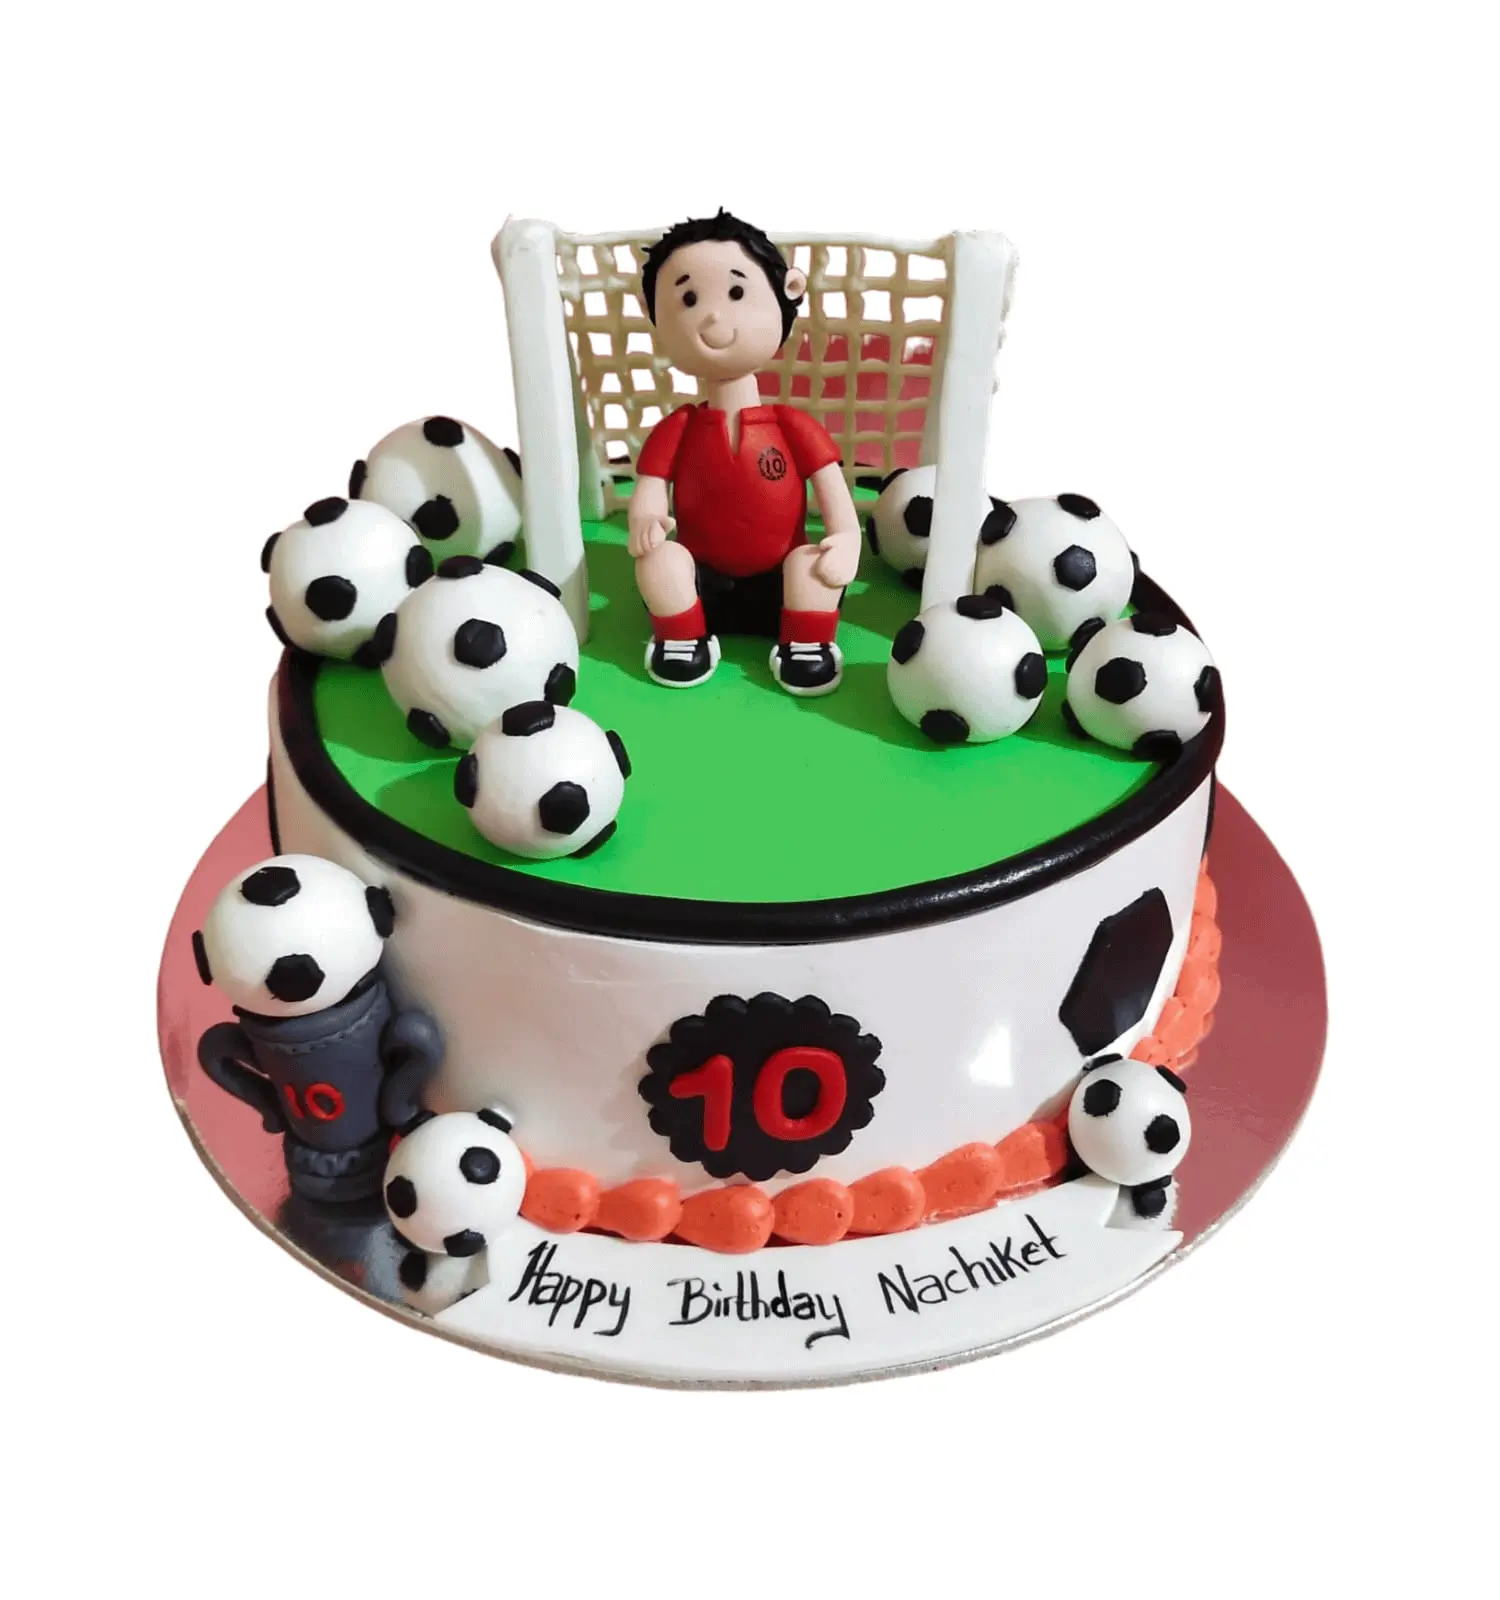 Goal-Scoring Delight: Football Cake for Winning Celebrations